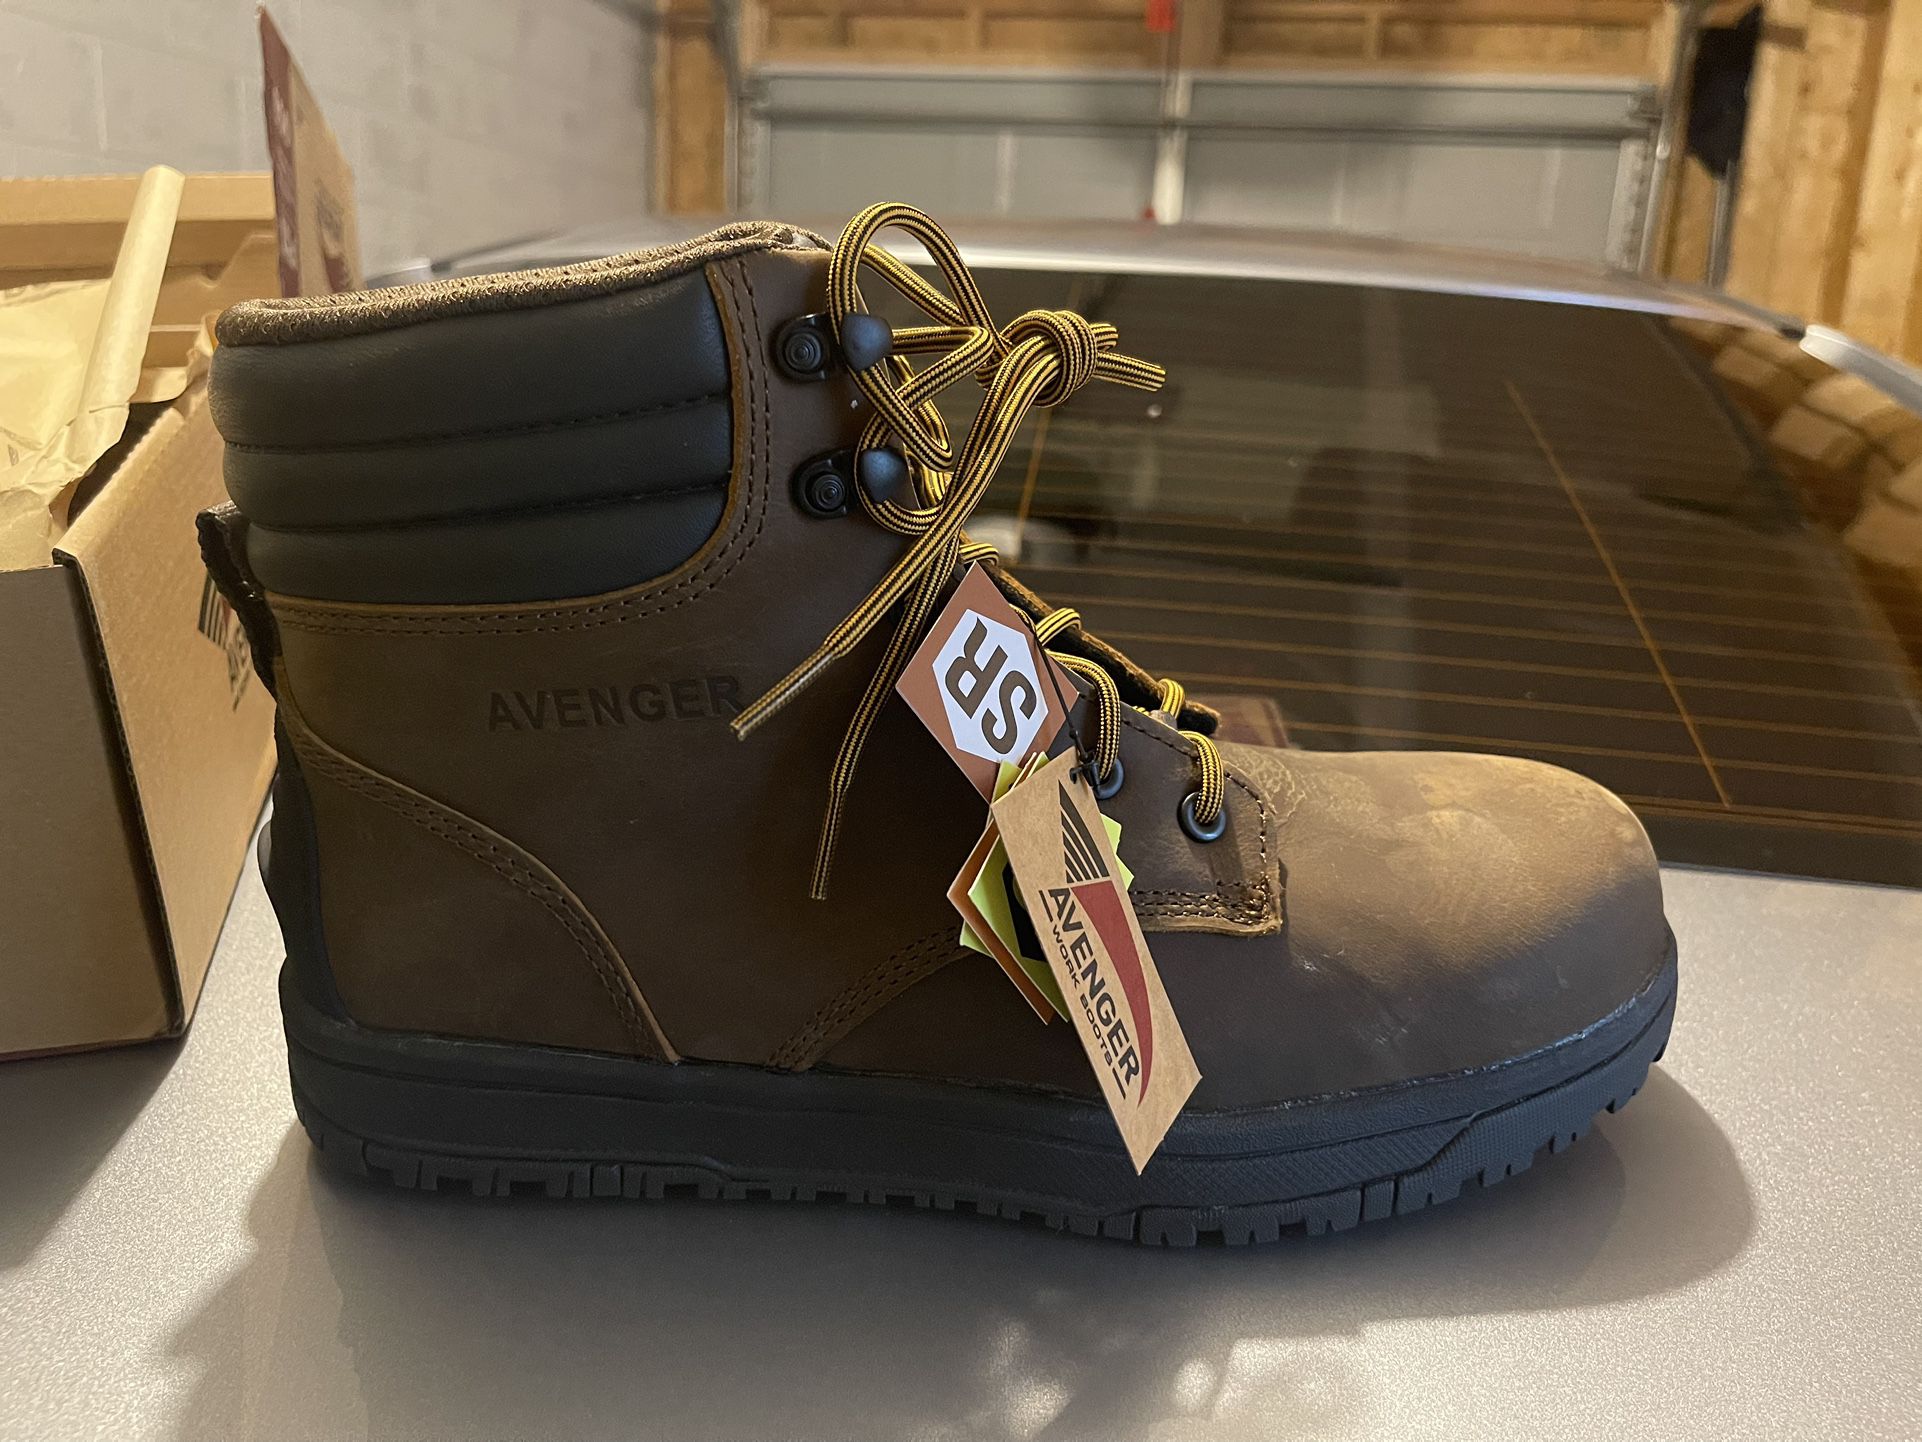 Avenger Work Boots (Size 10.5) Regular Price $110